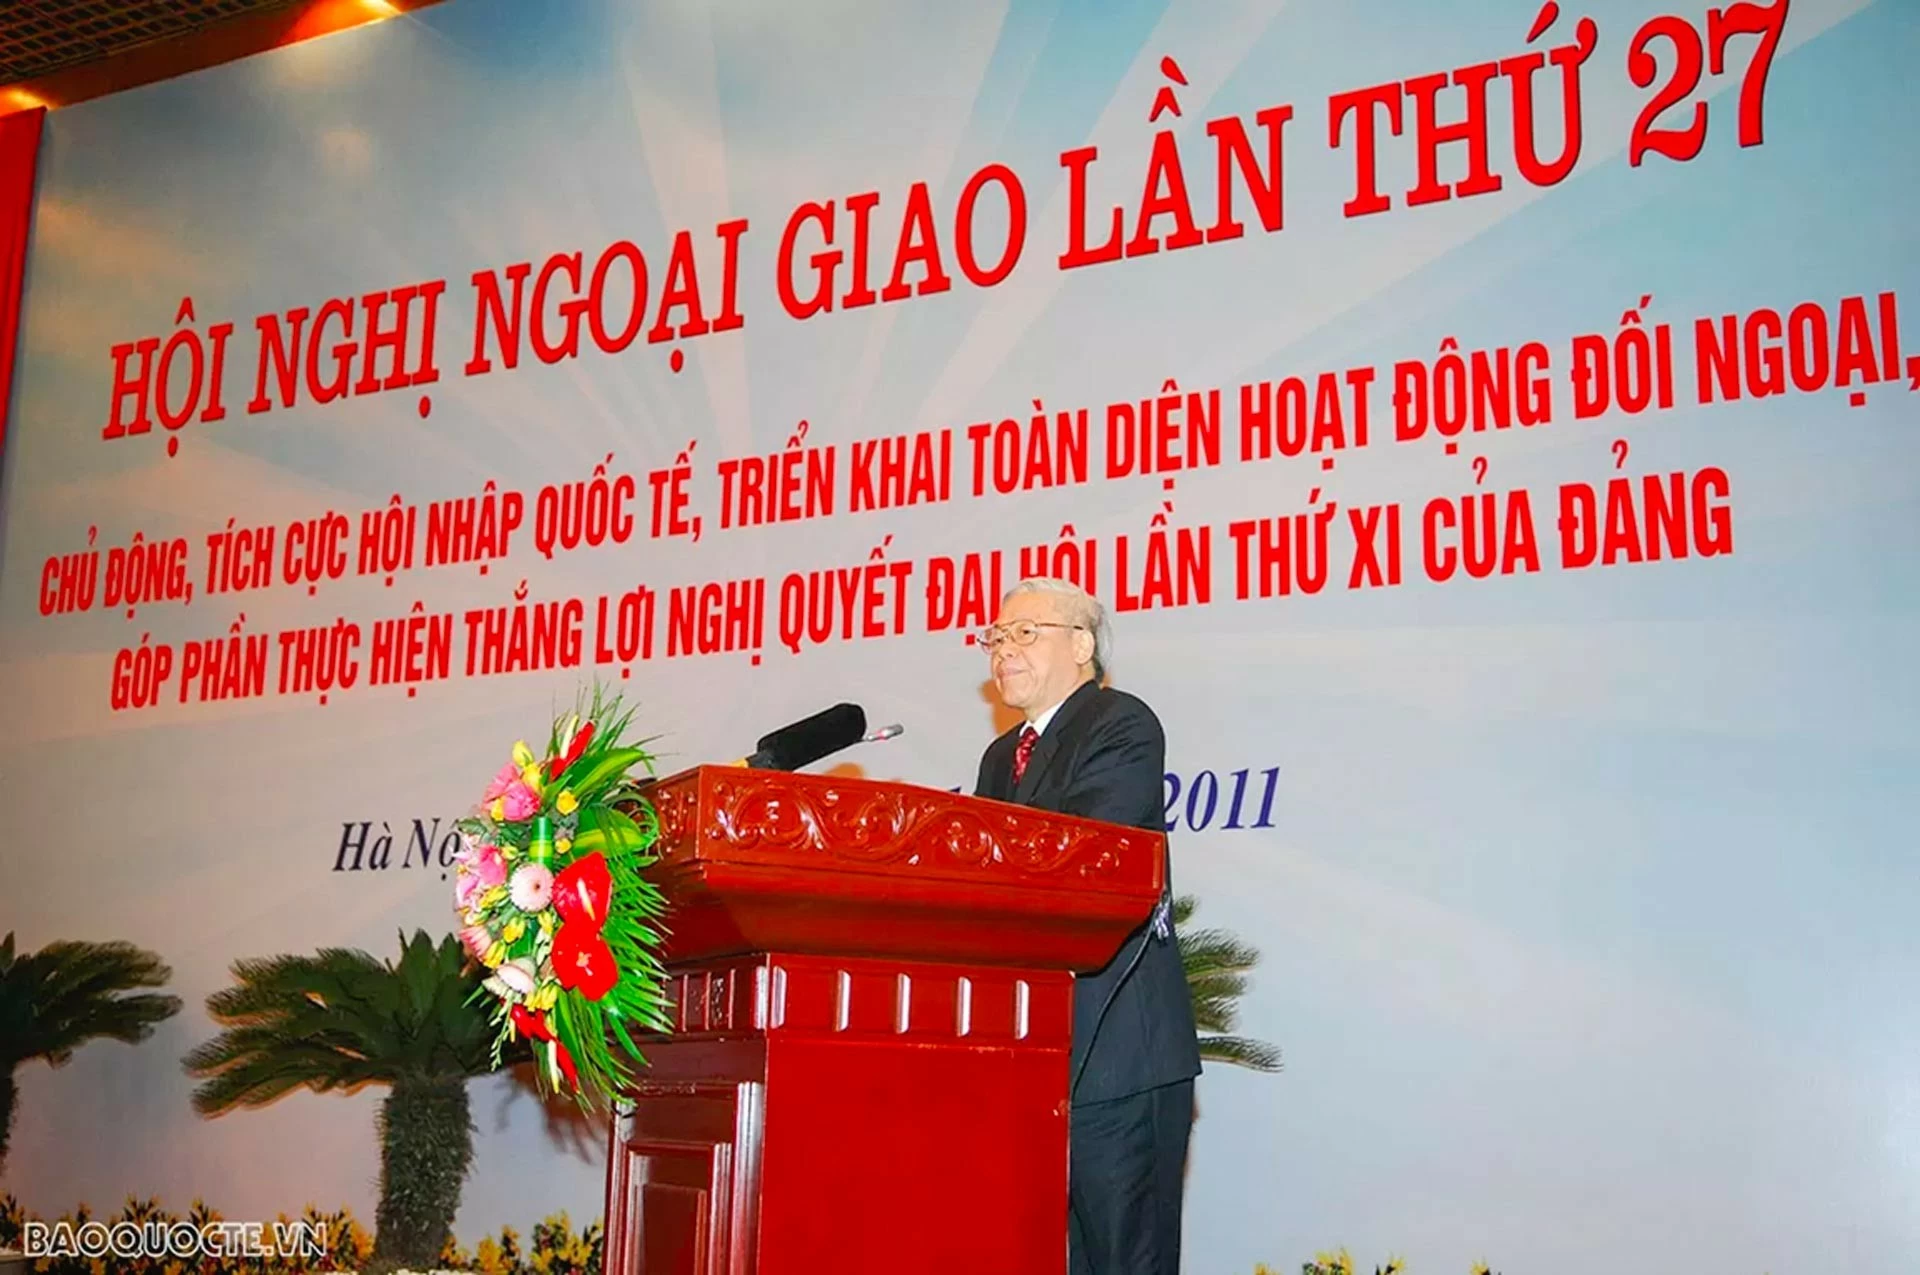 Tổng Bí thư Nguyễn Phú Trọng với ngoại giao và ngoại giao, đối ngoại với Tổng Bí thư